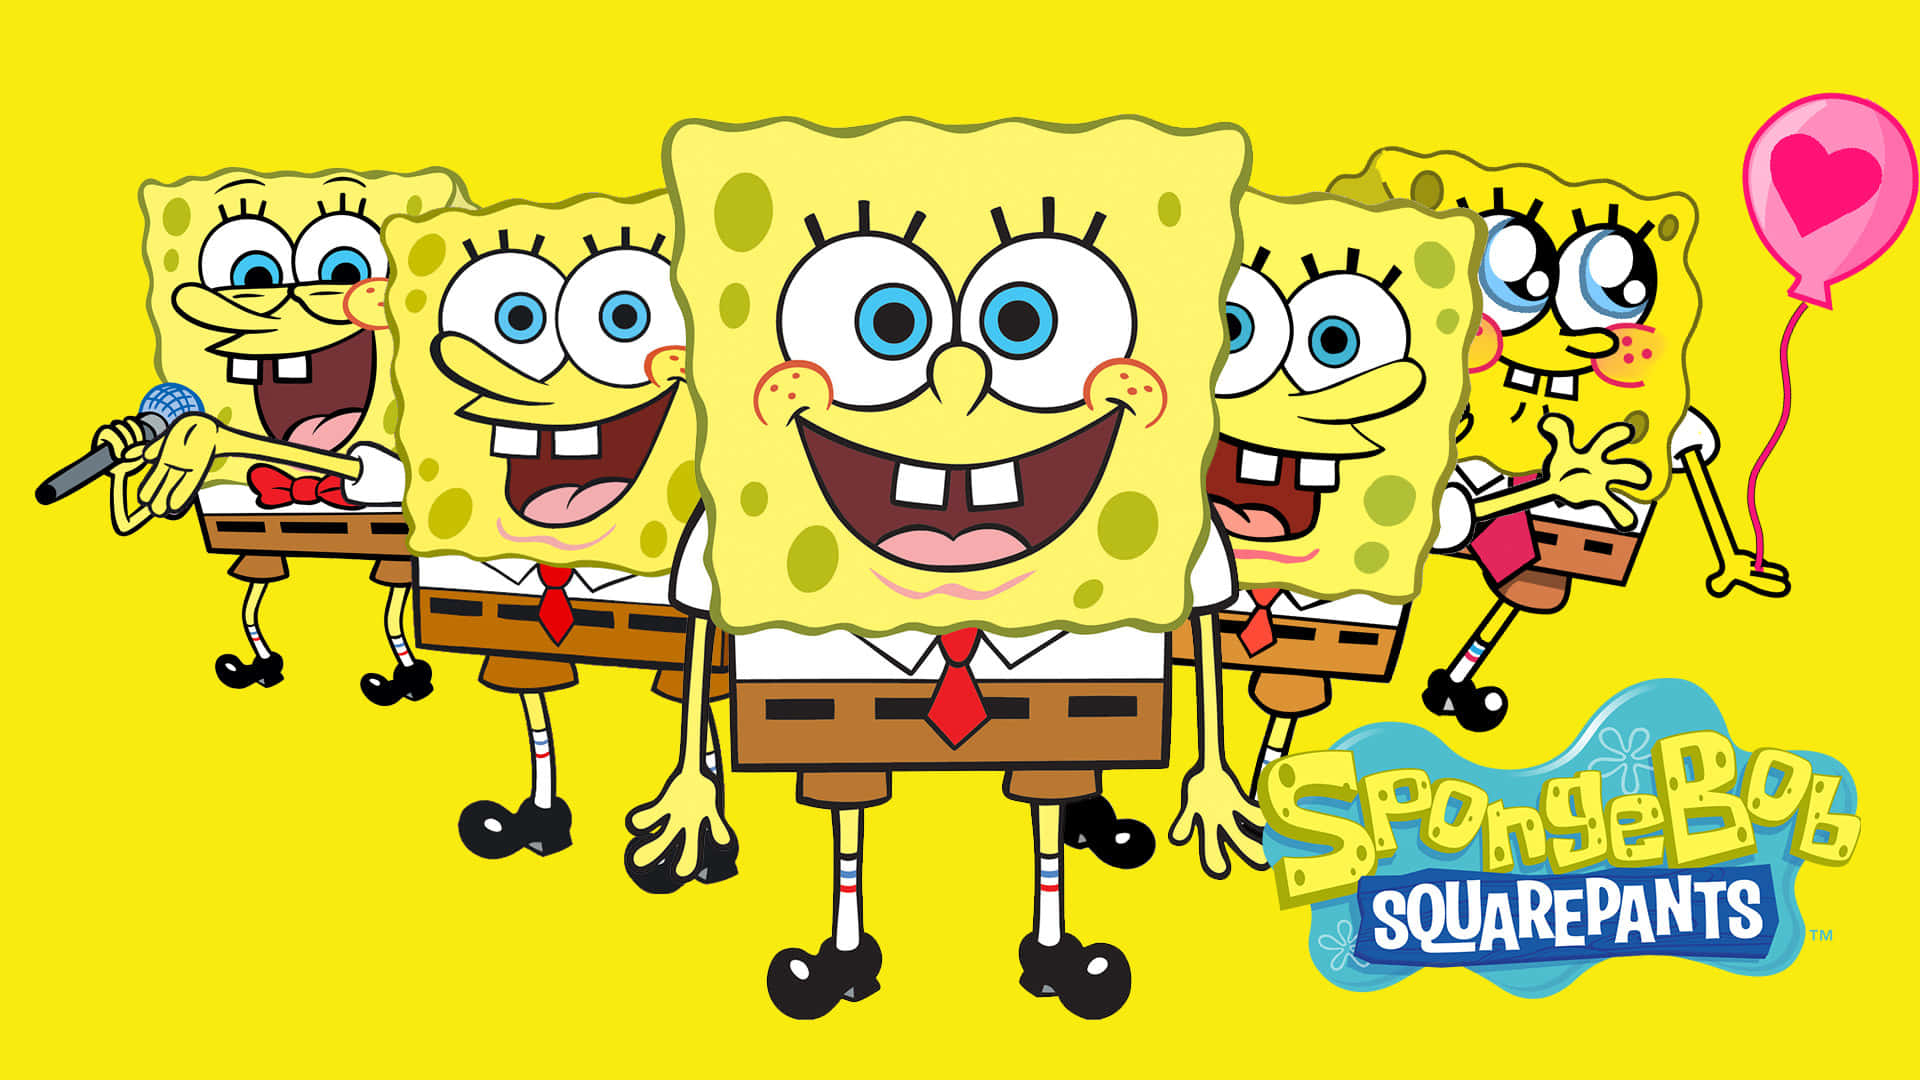 Alle dine yndlings-Spongebob-karakterer klar til at bringe dig et smil. Wallpaper